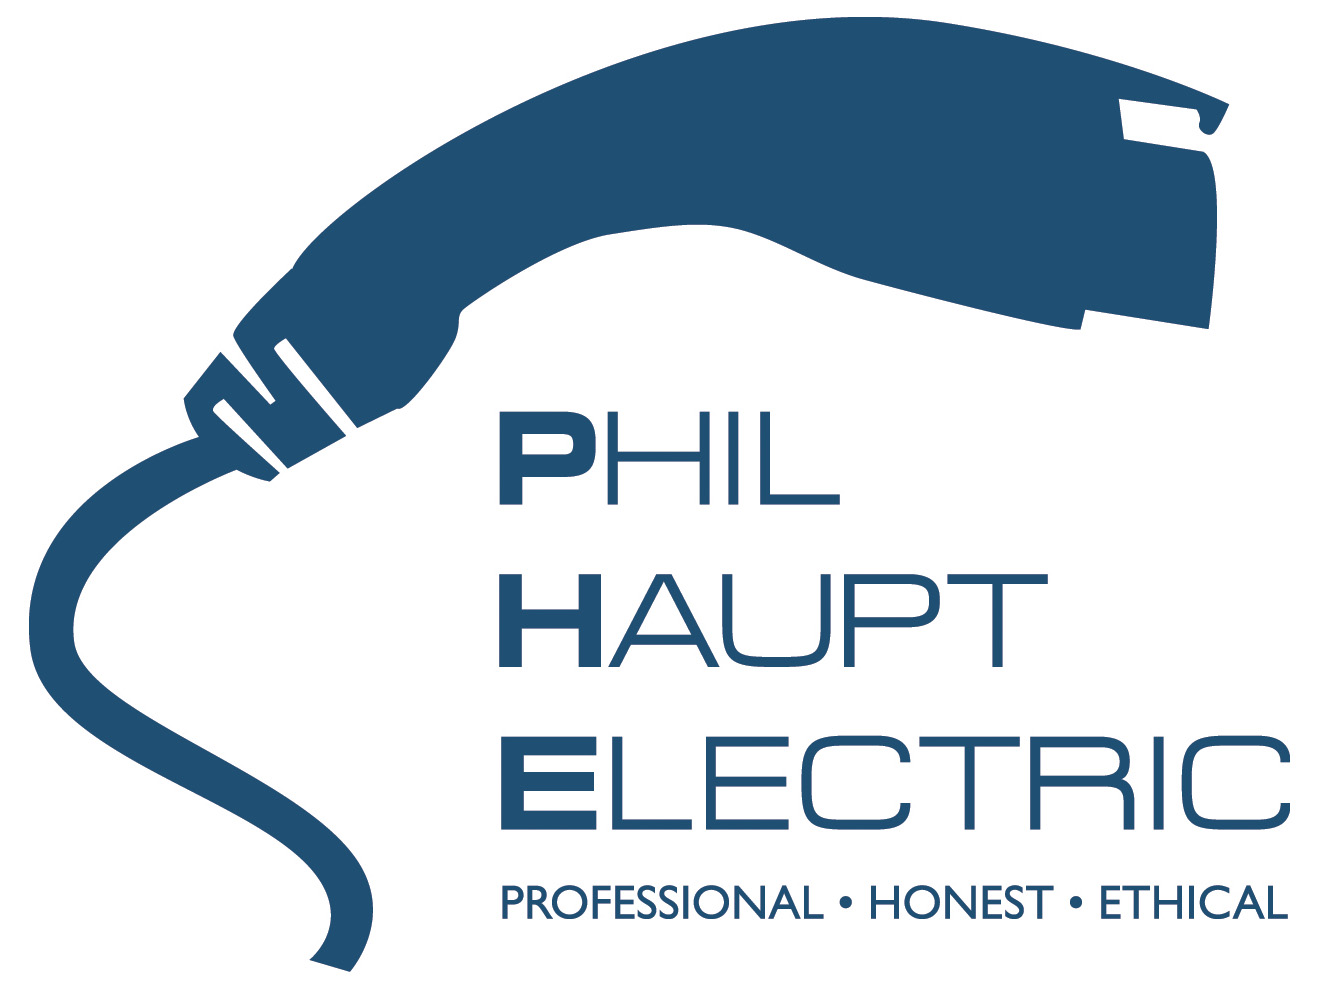 Phil Haupt Electric logo